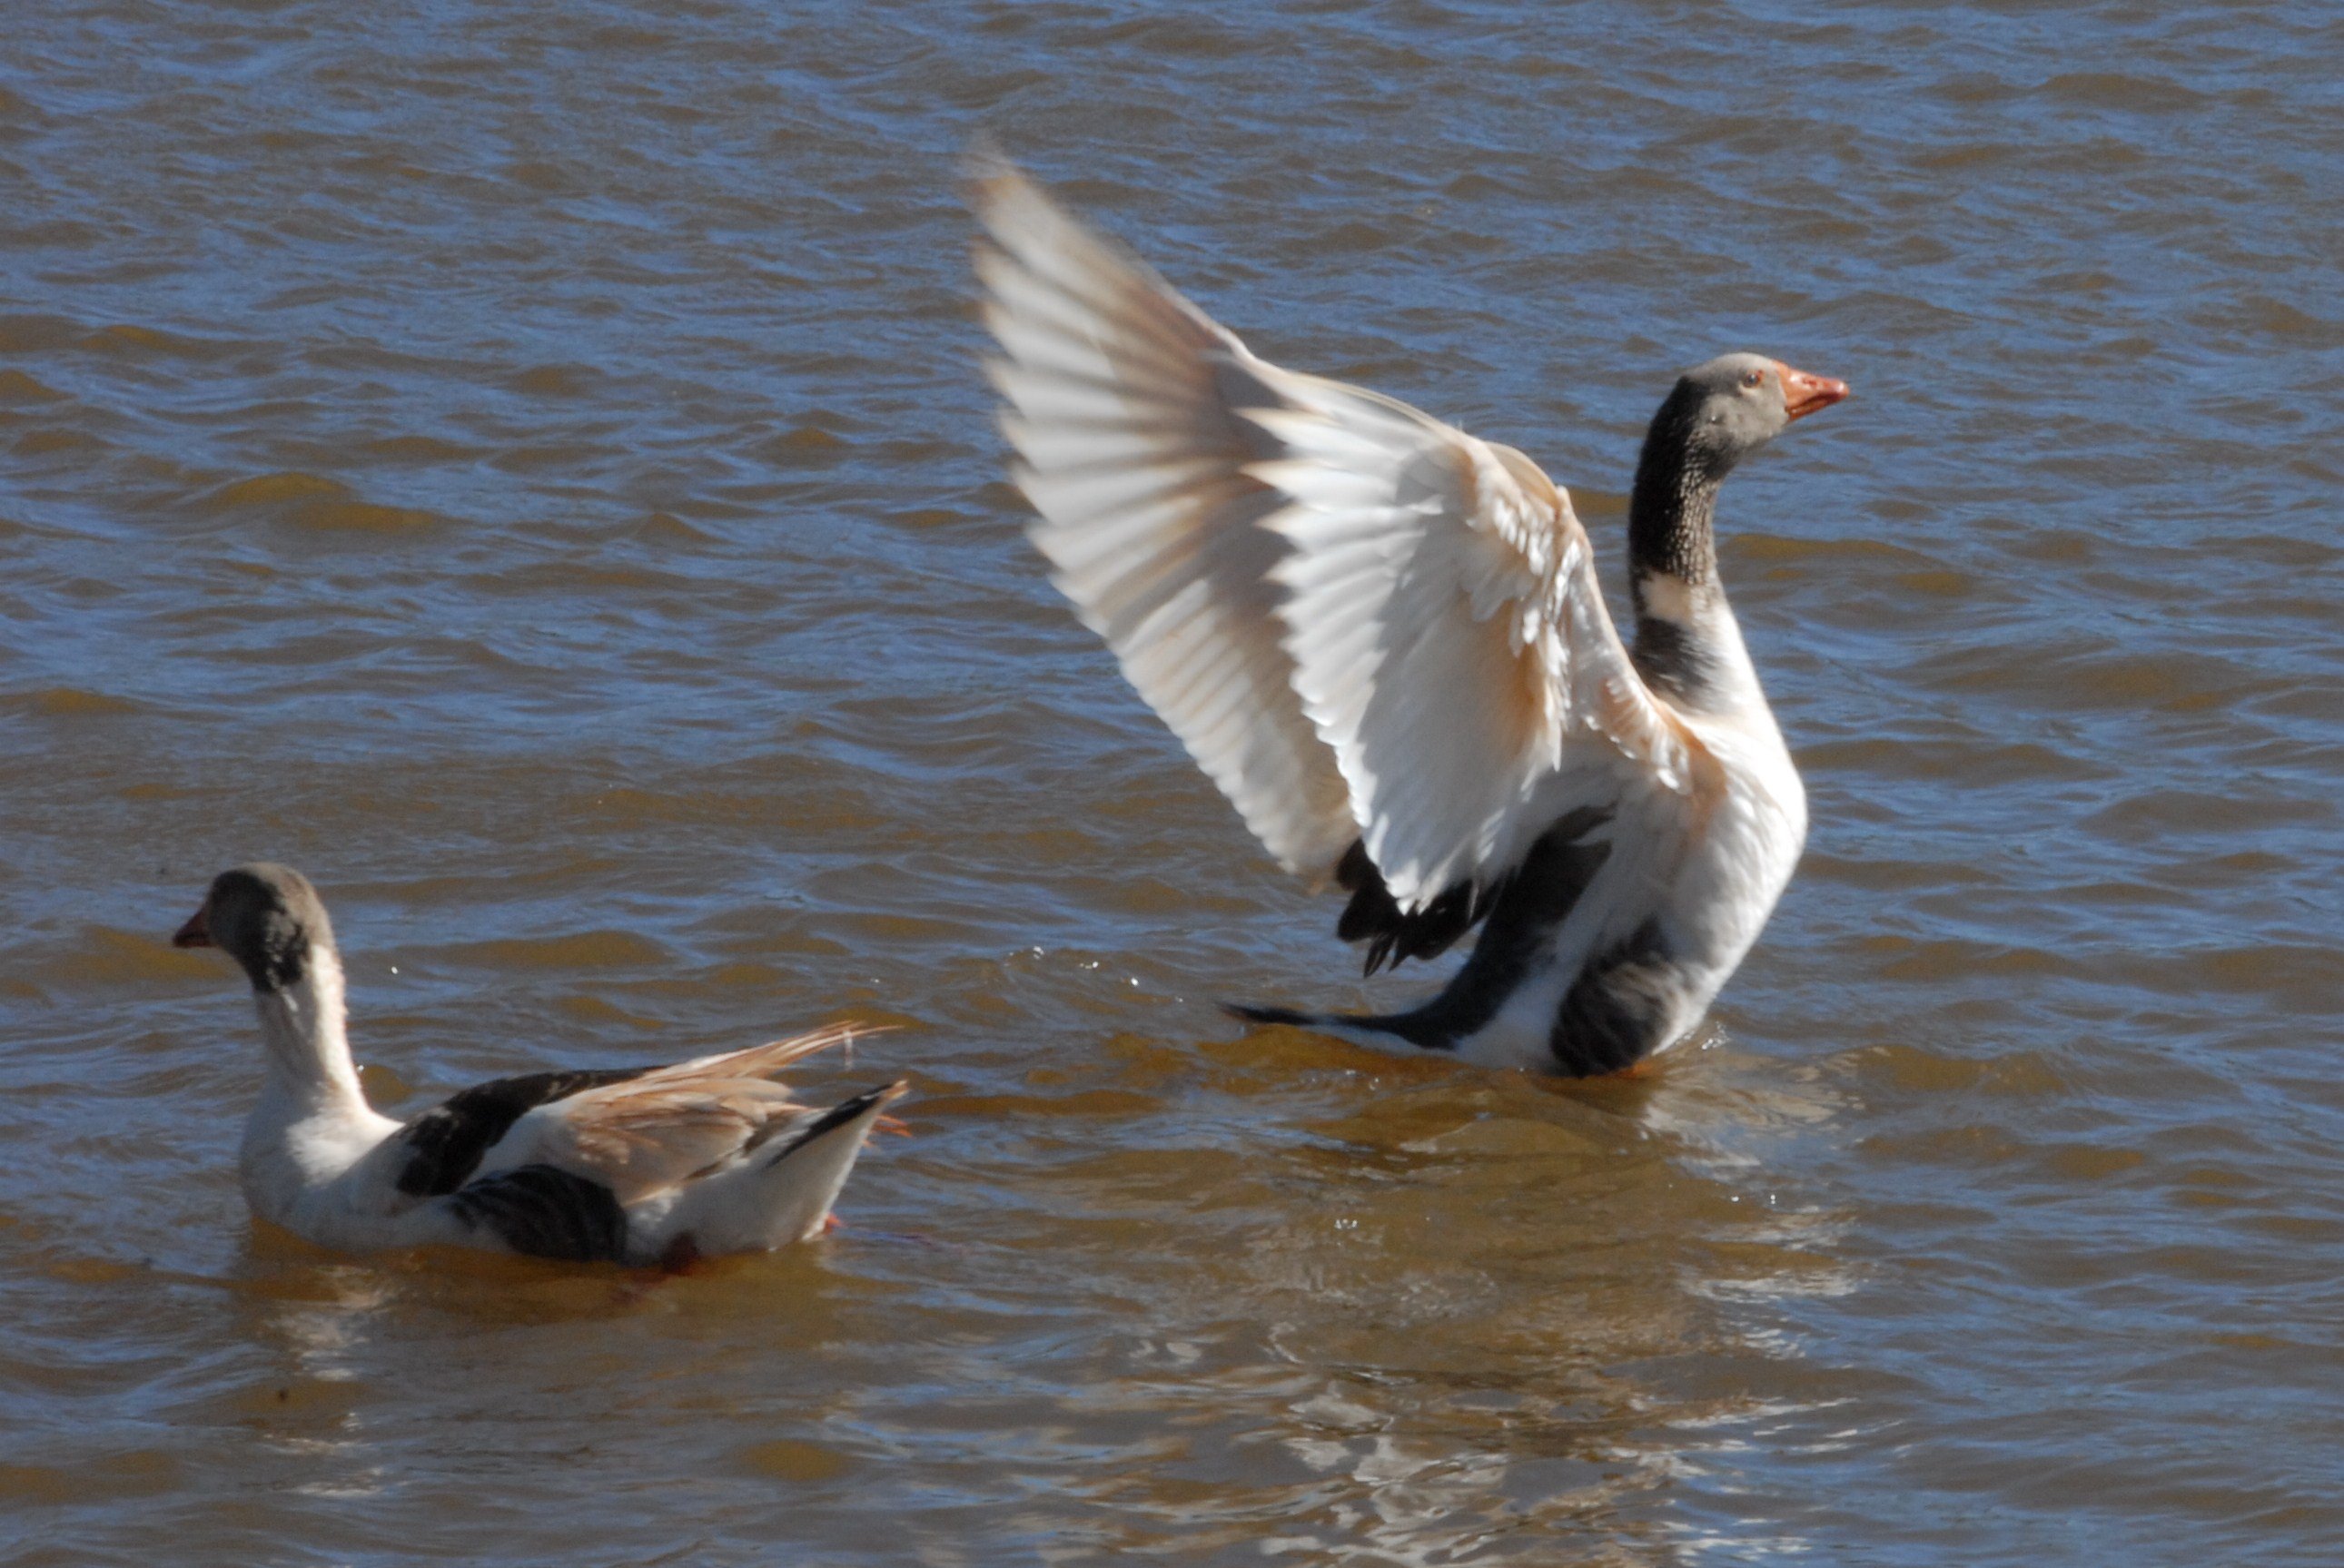 Aves se exibem no lago do Parque da Raposa